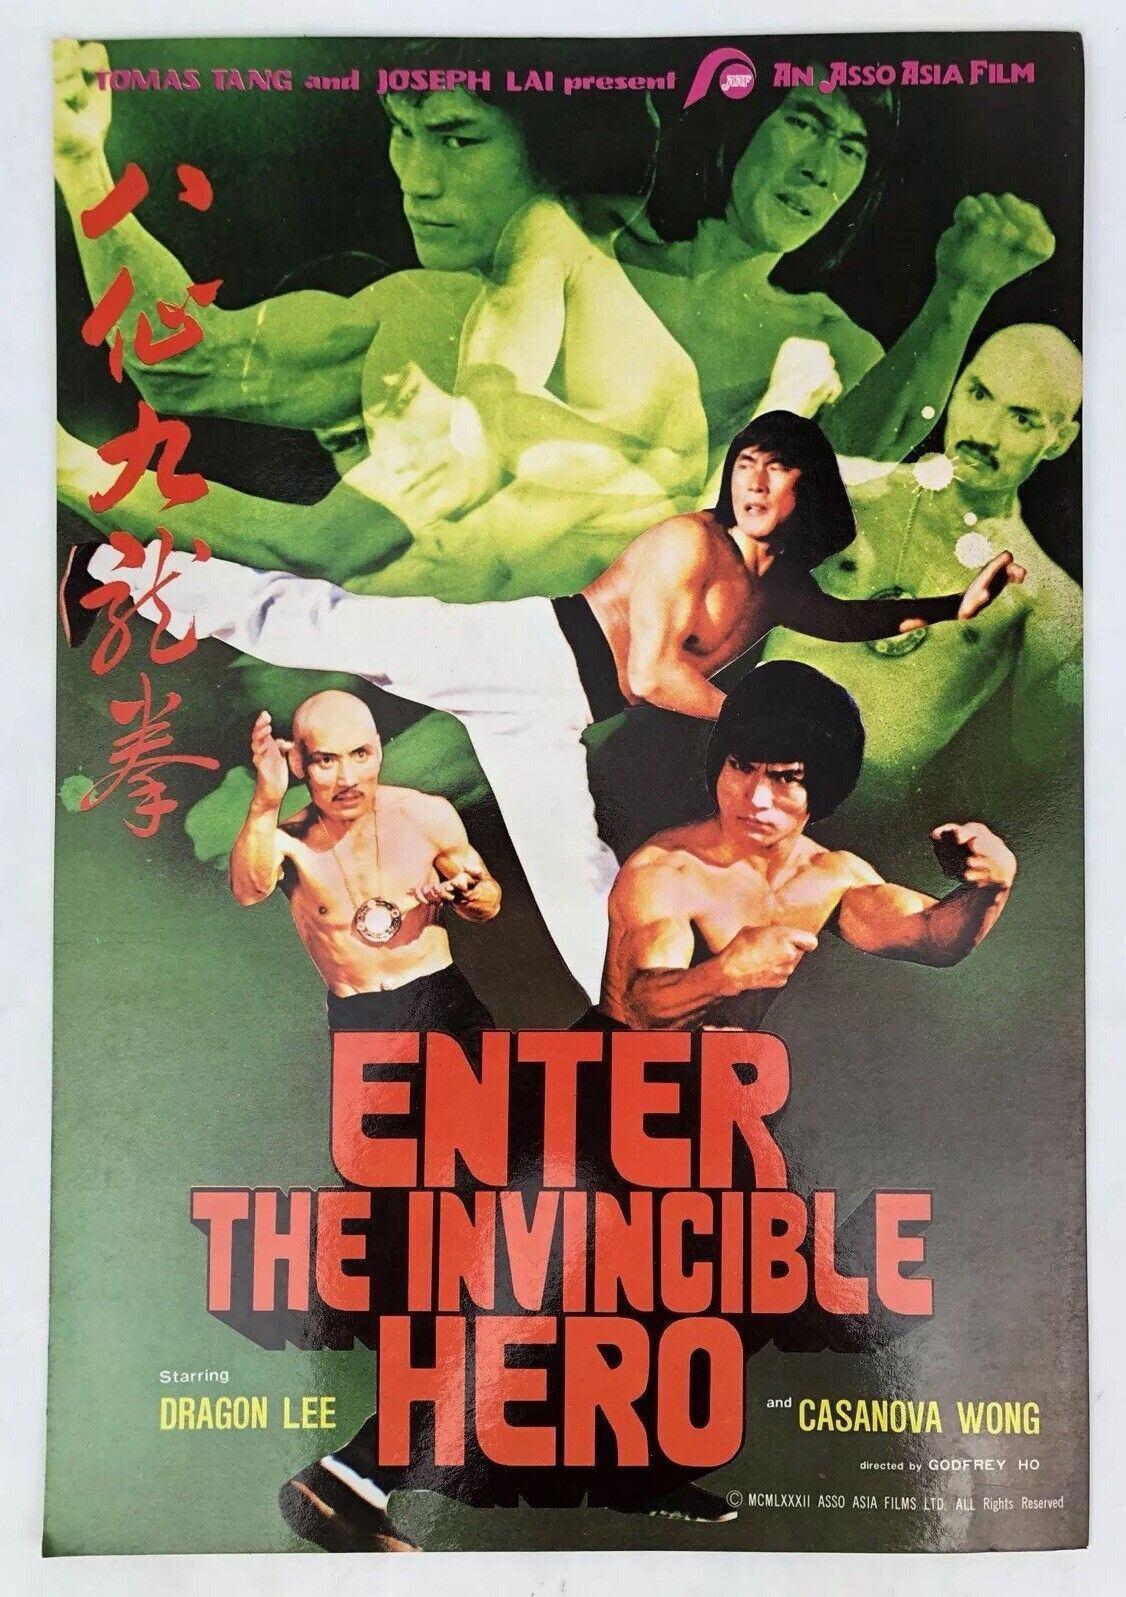 invincible movie poster